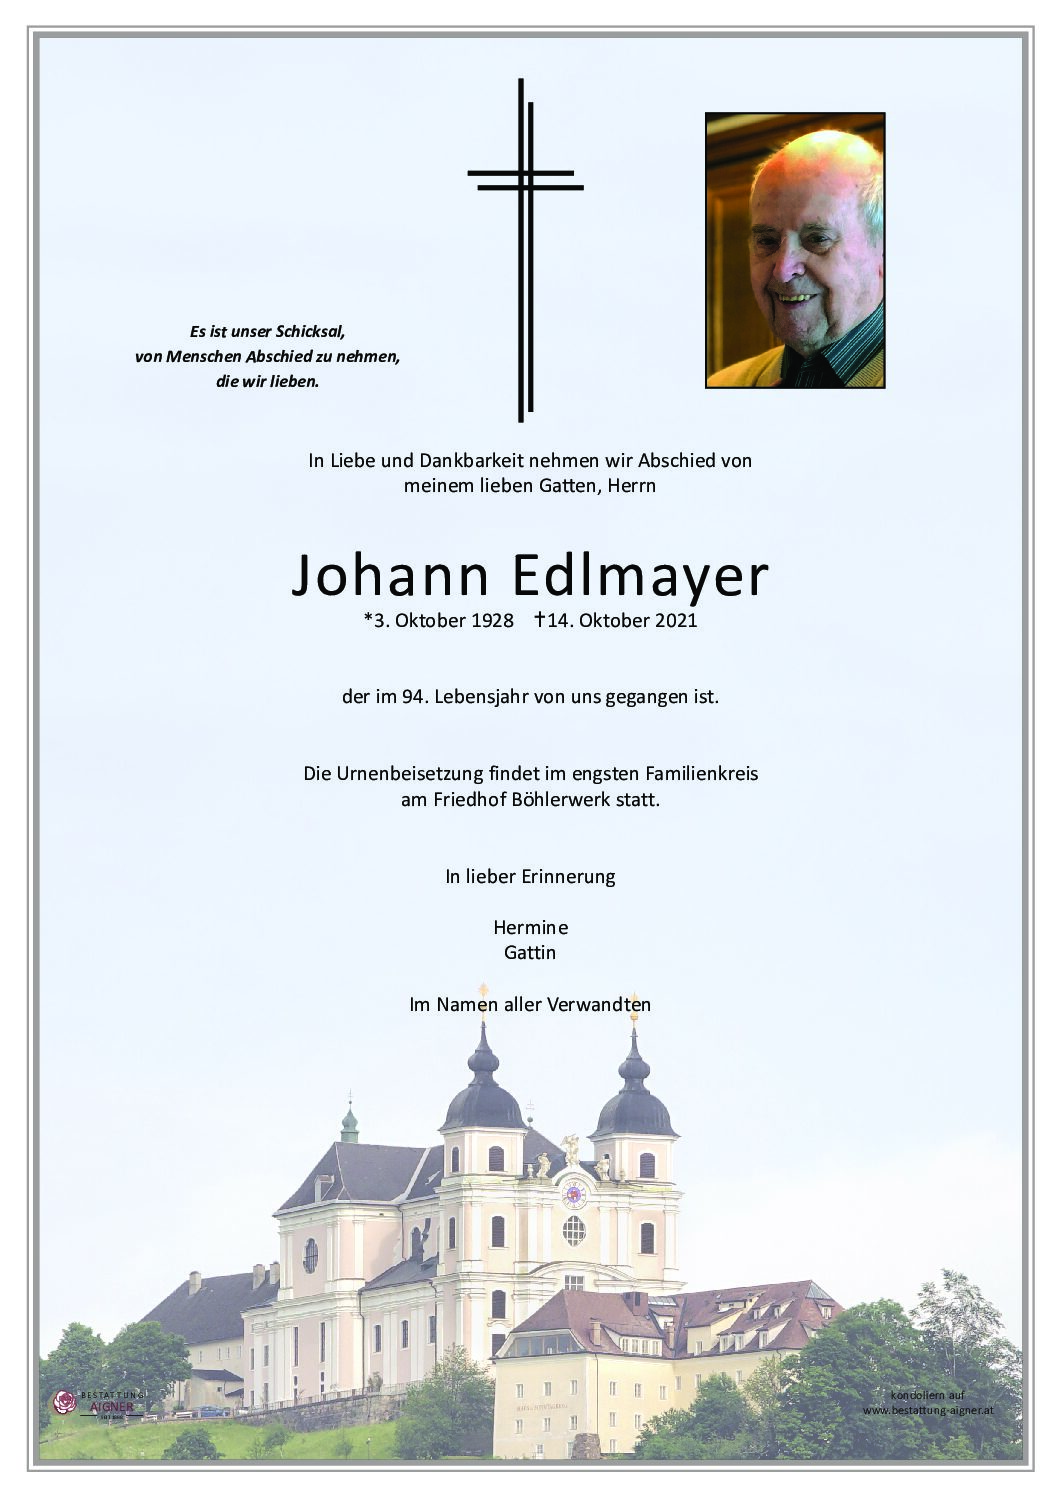 Johann Edlmayer